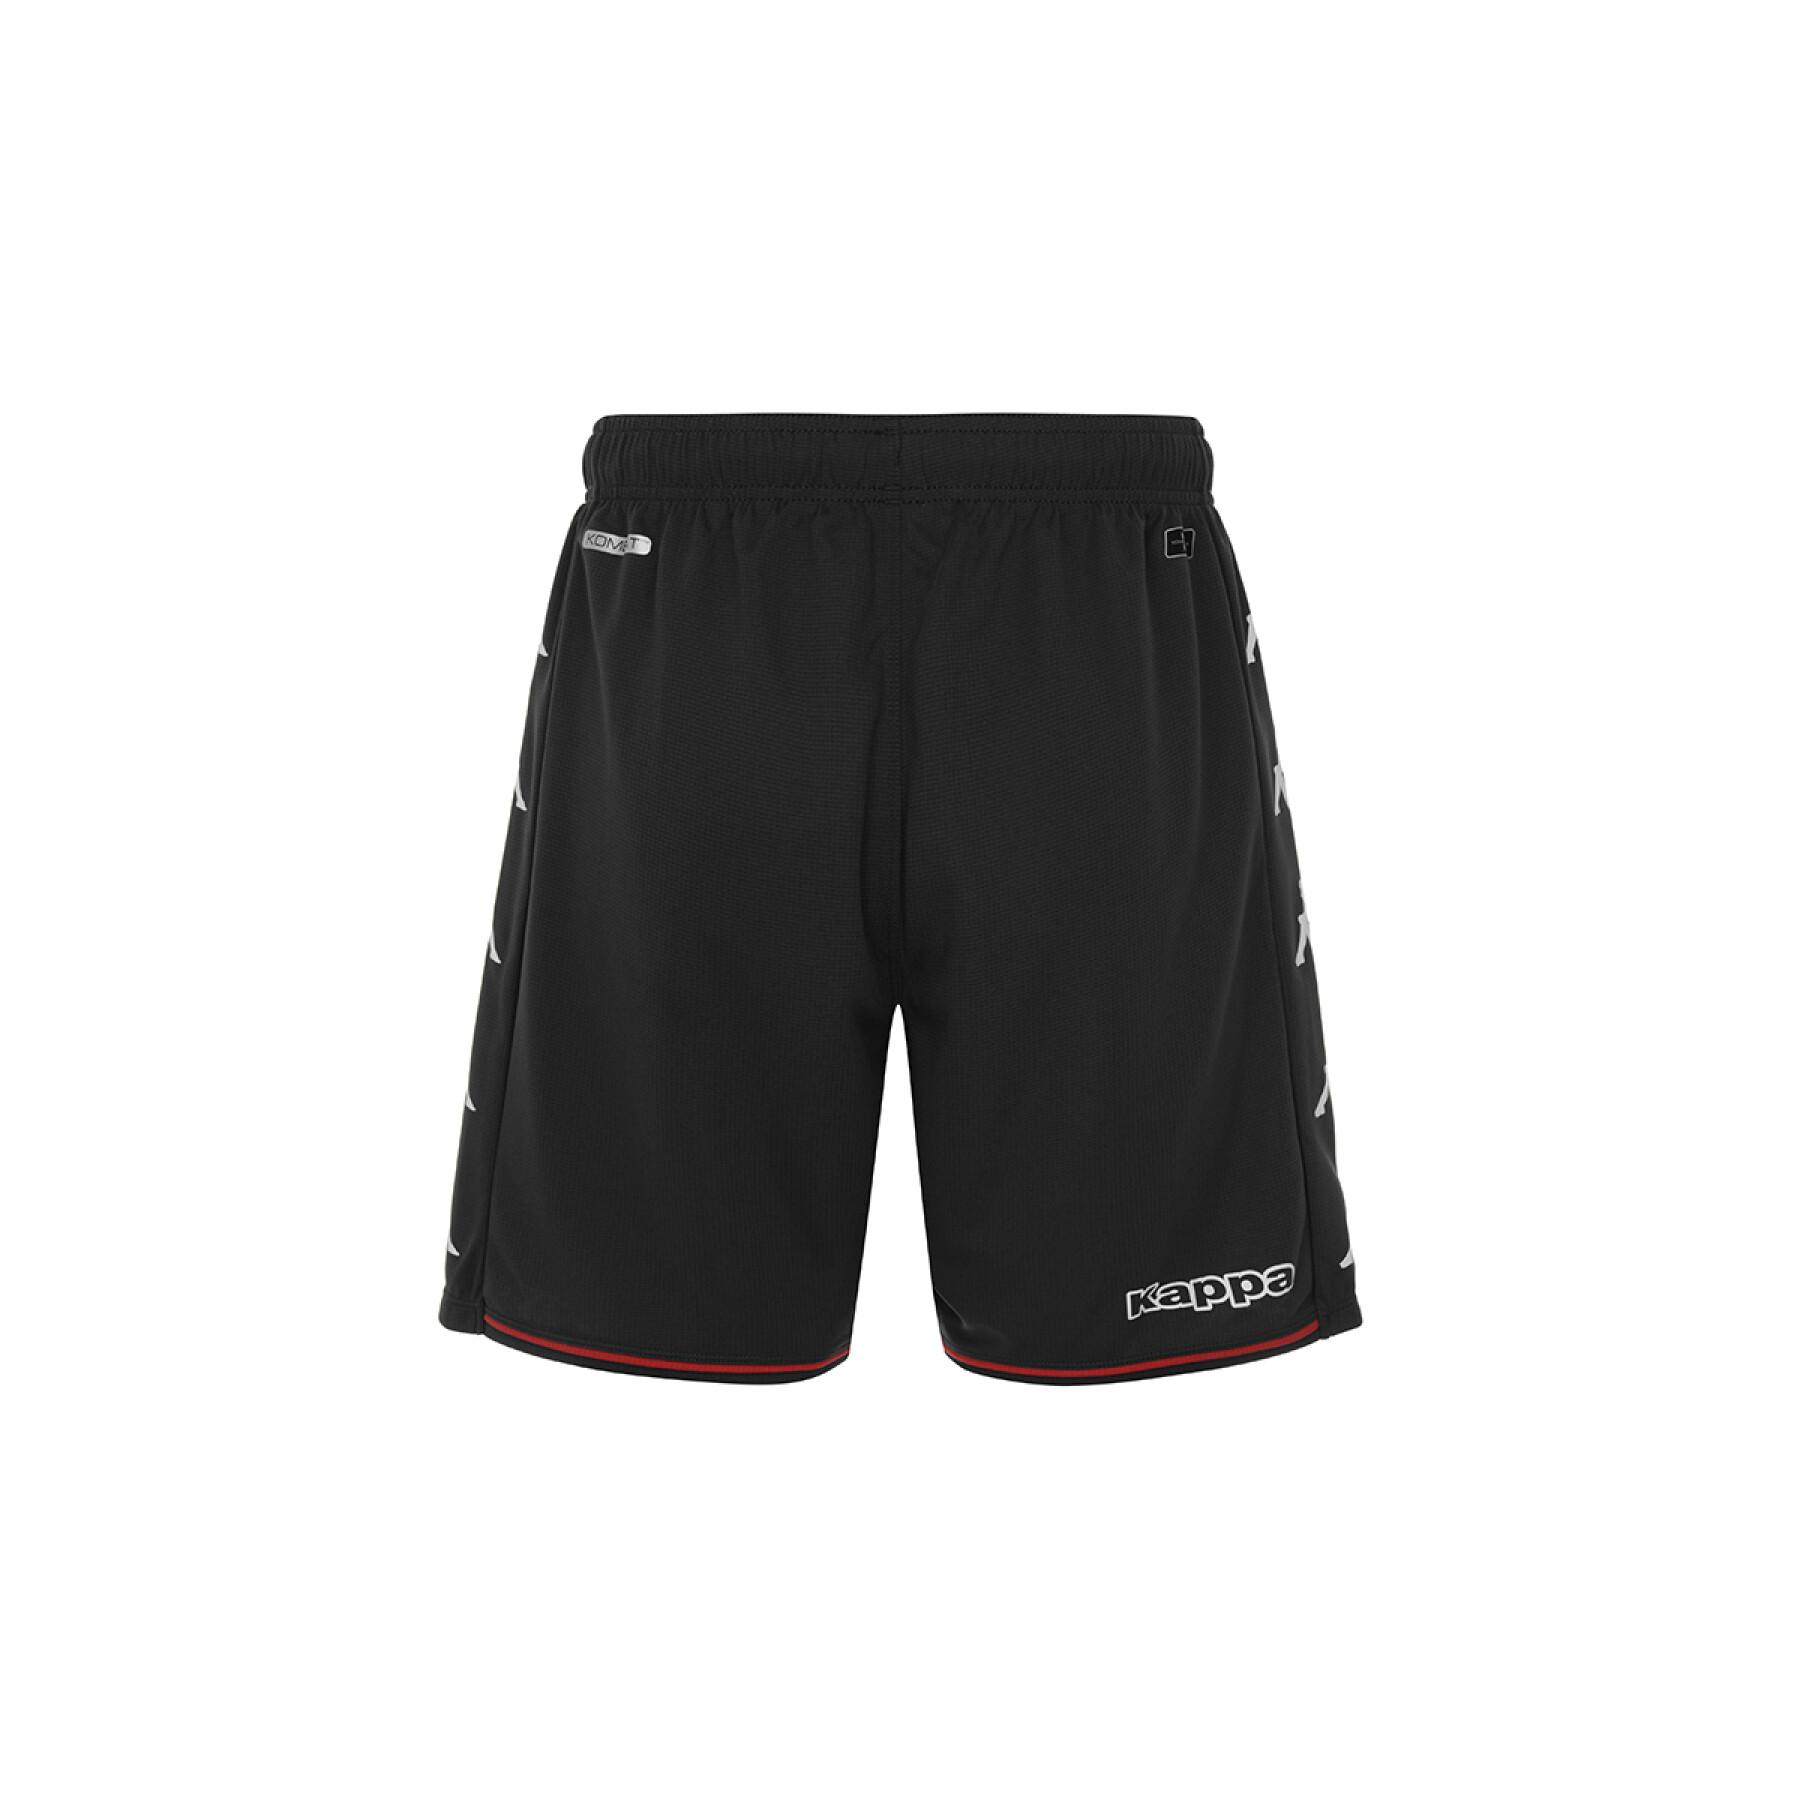 Outdoor shorts AS Monaco 2021/22